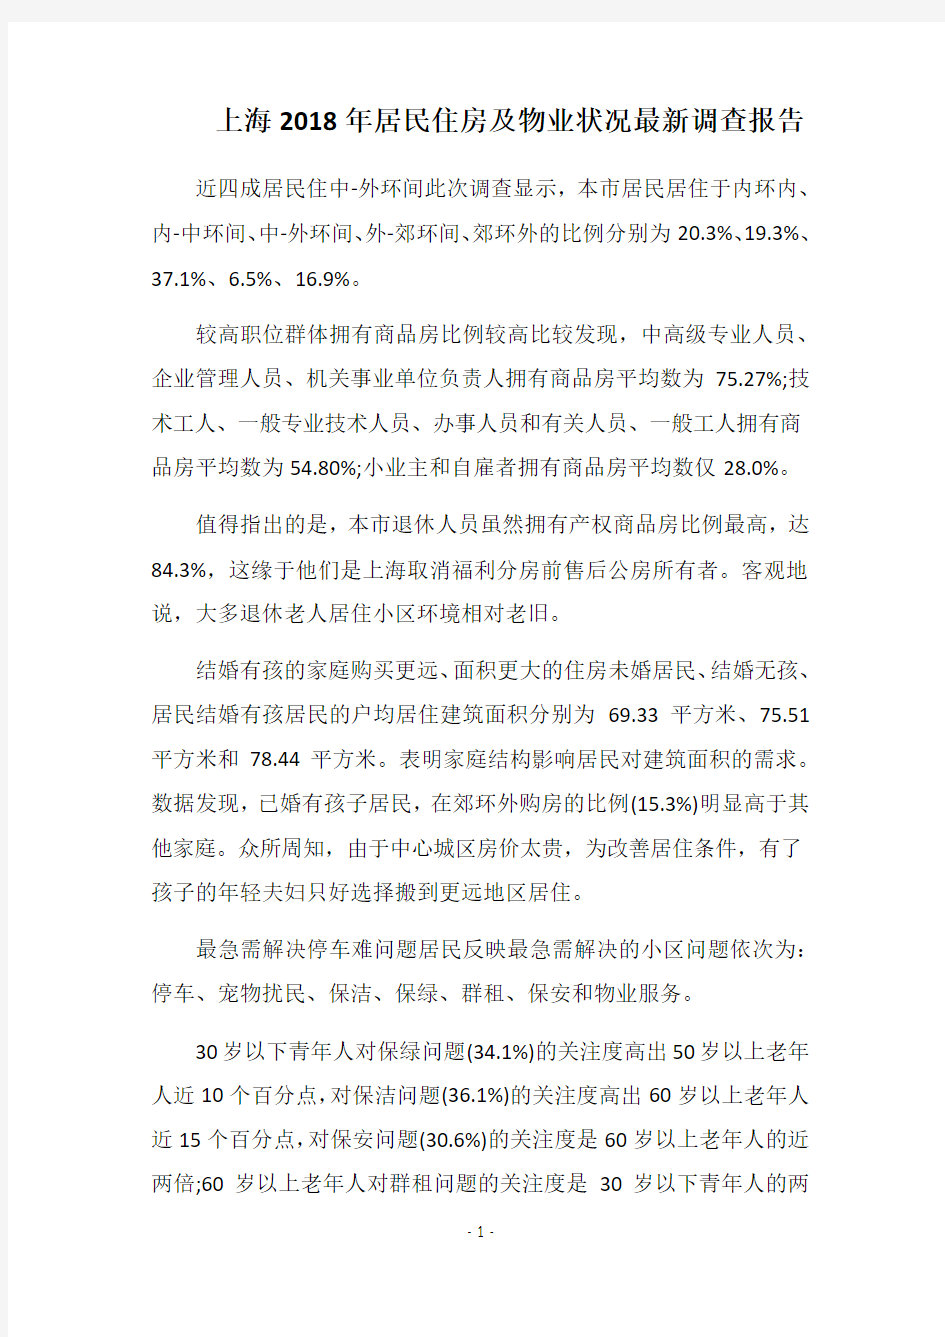 上海2018年居民住房及物业状况最新调查报告